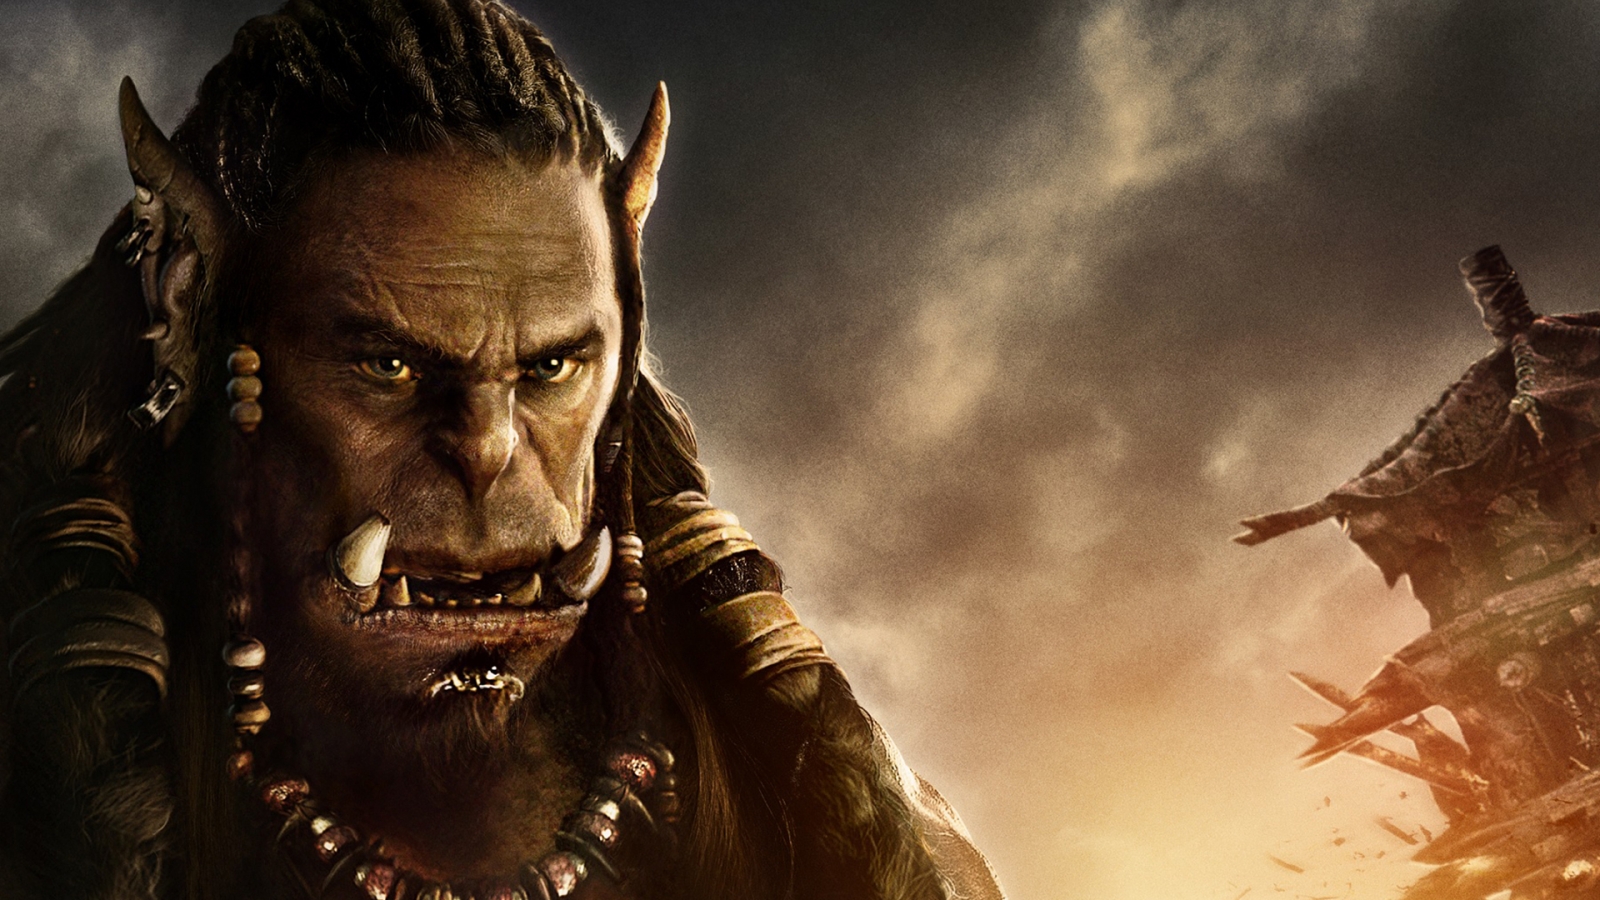 Warcraft Movie 2016 Durotan for 1600 x 900 HDTV resolution